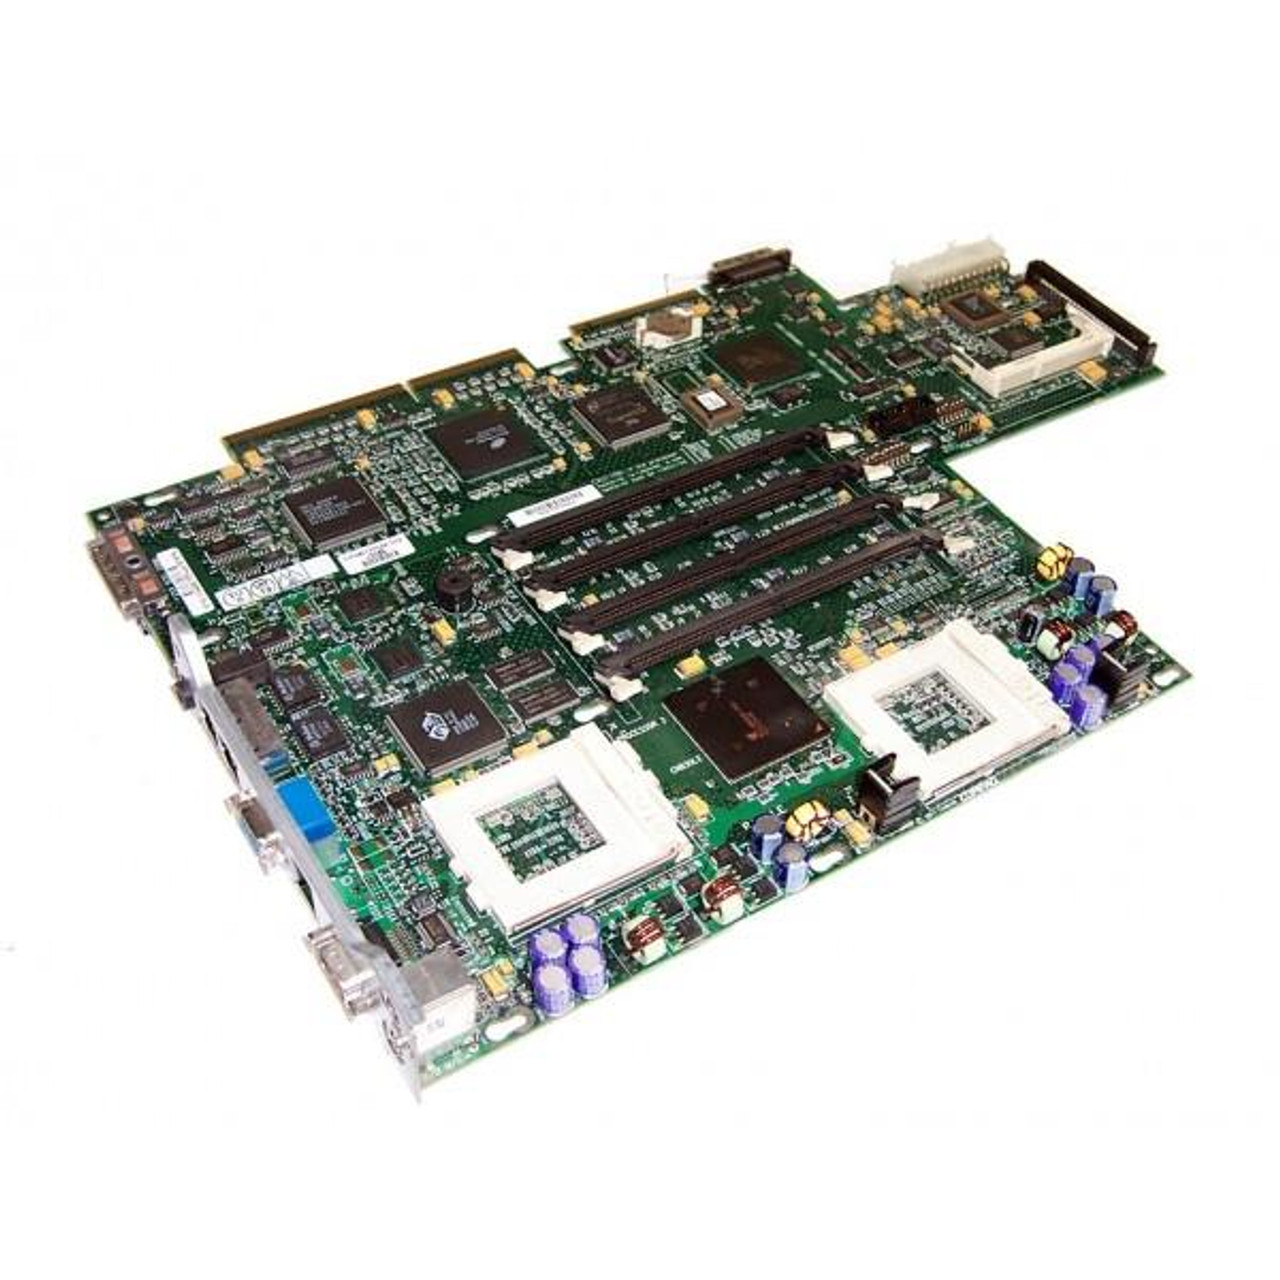 239120-001 Compaq System Board (Motherboard) ( 1.13GHz ) PL DL360 (Refurbished)